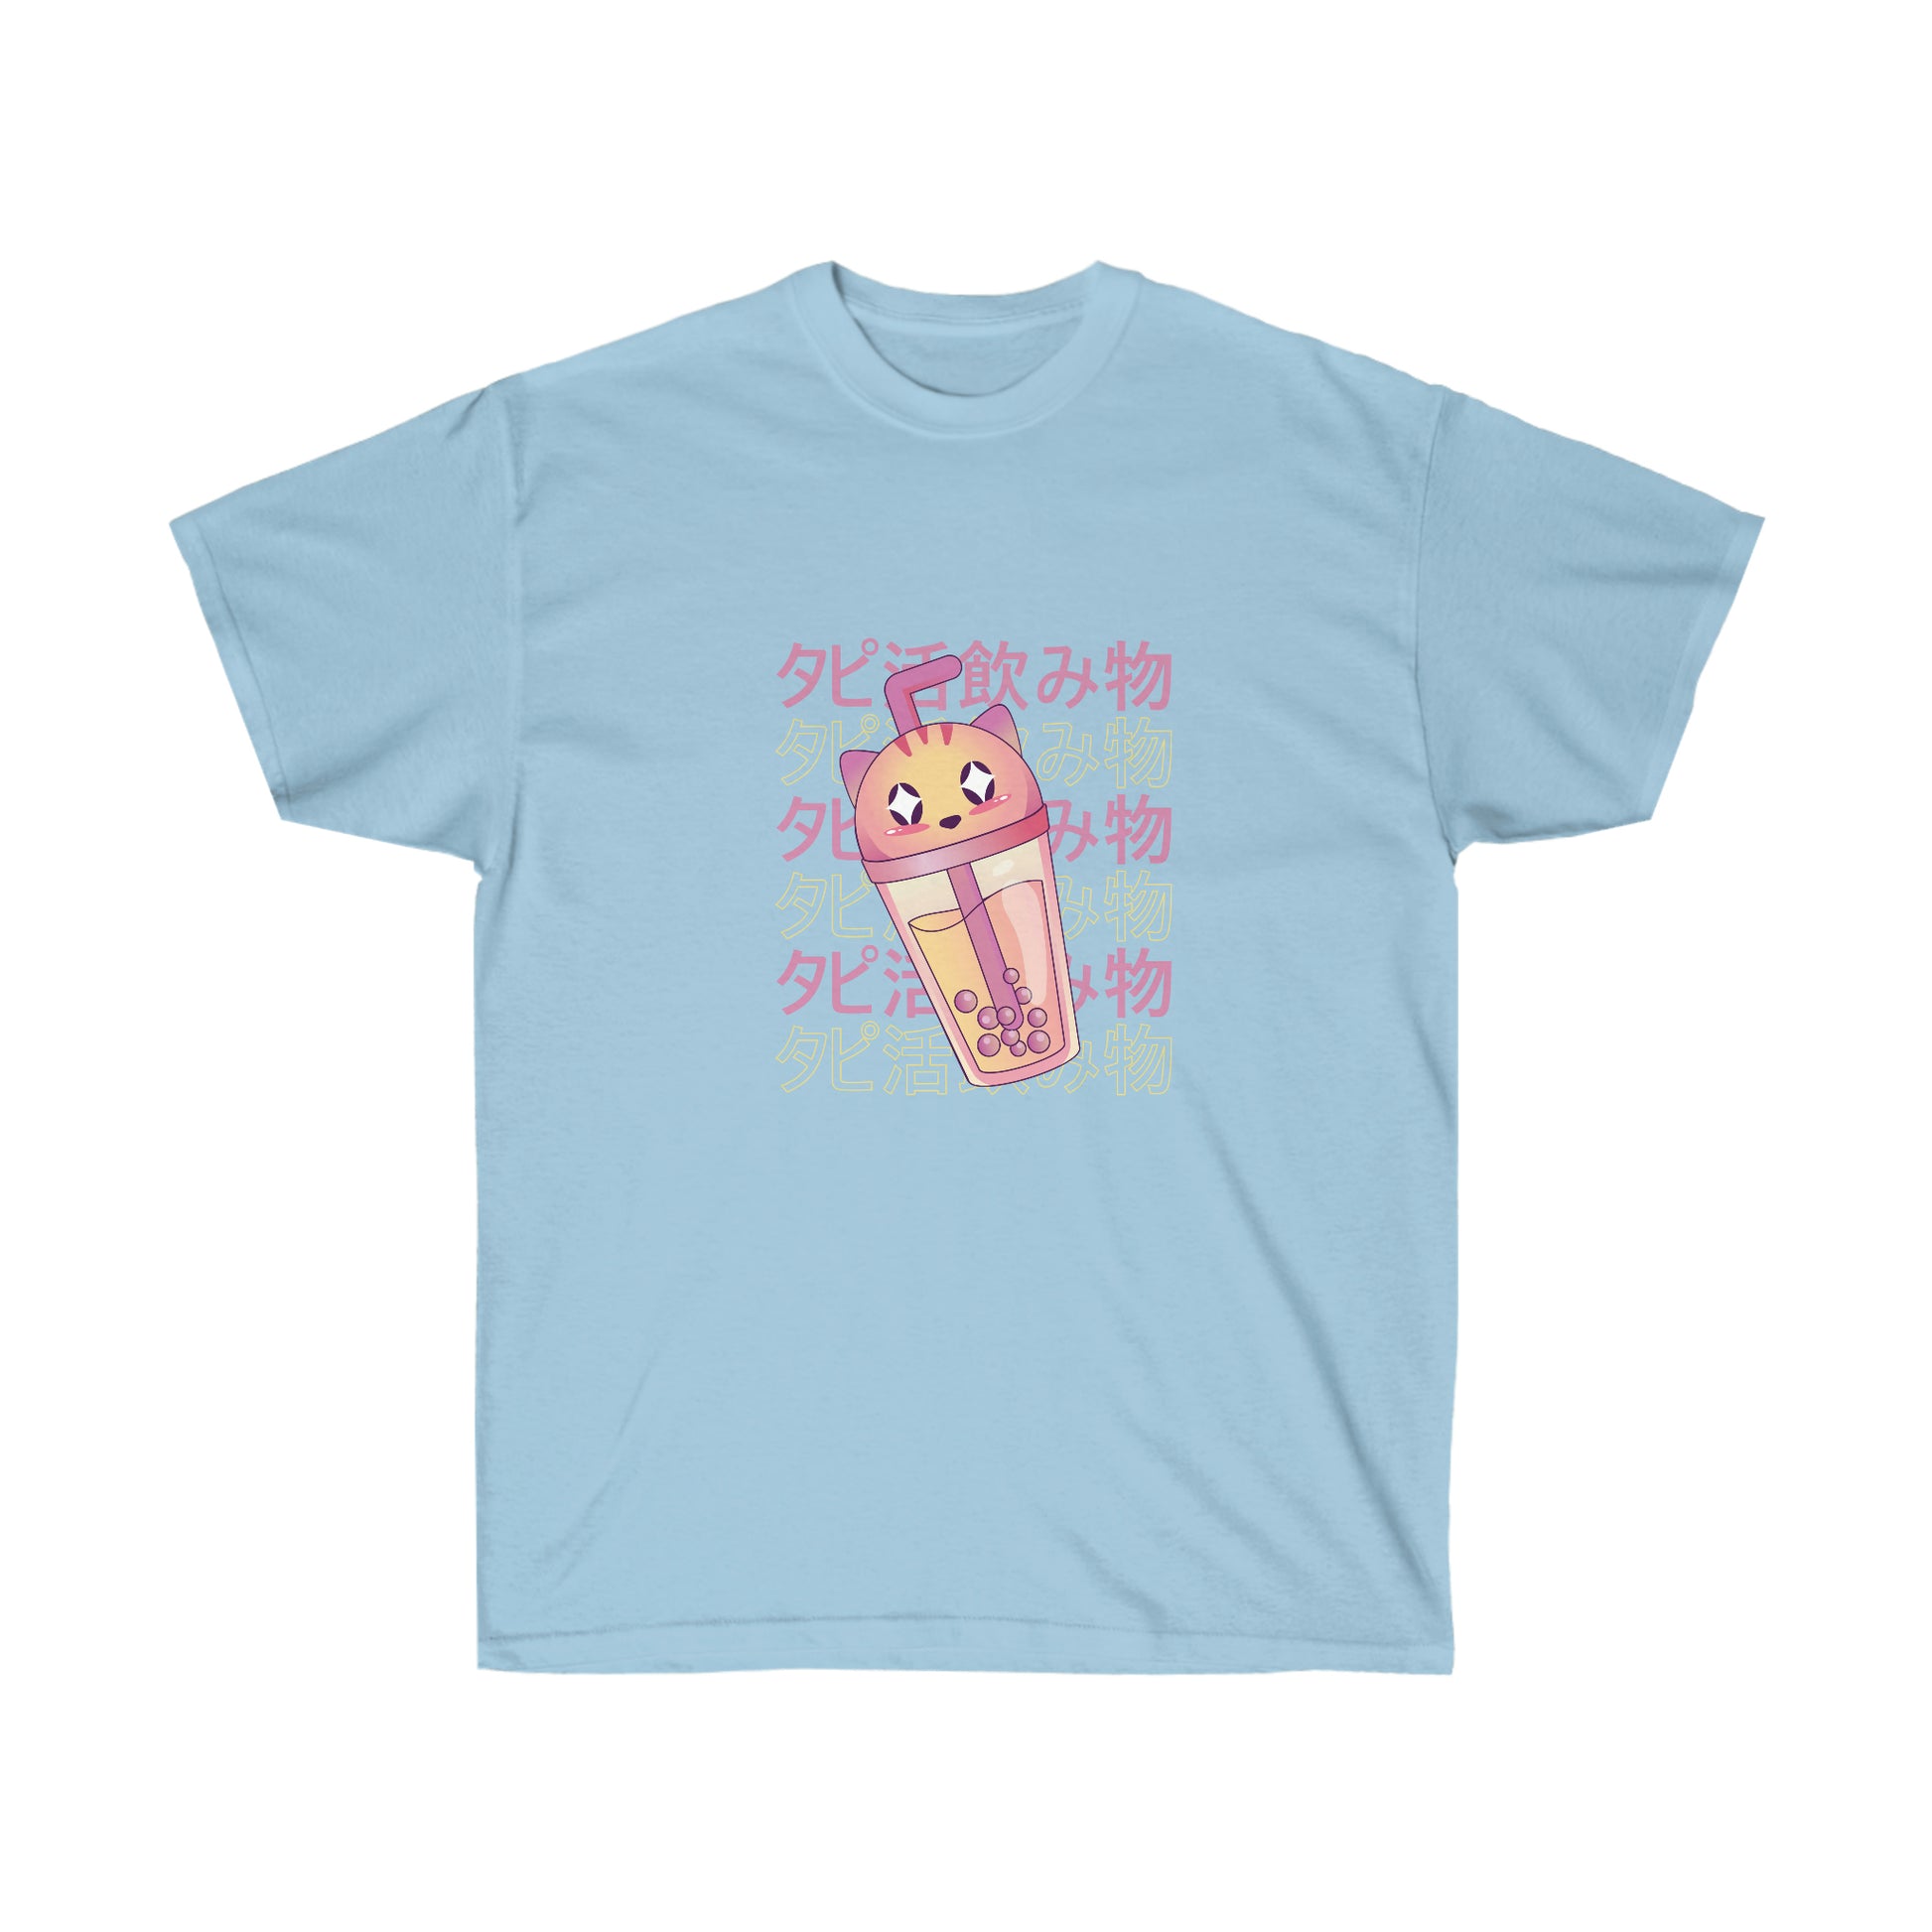 Kawaii Sweatshirt, Kawaii Clothing, Kawaii Clothes, Yami Kawaii Aesthetic, Pastel Kawaii Cat Boba Tea Sweatshirt T-Shirt